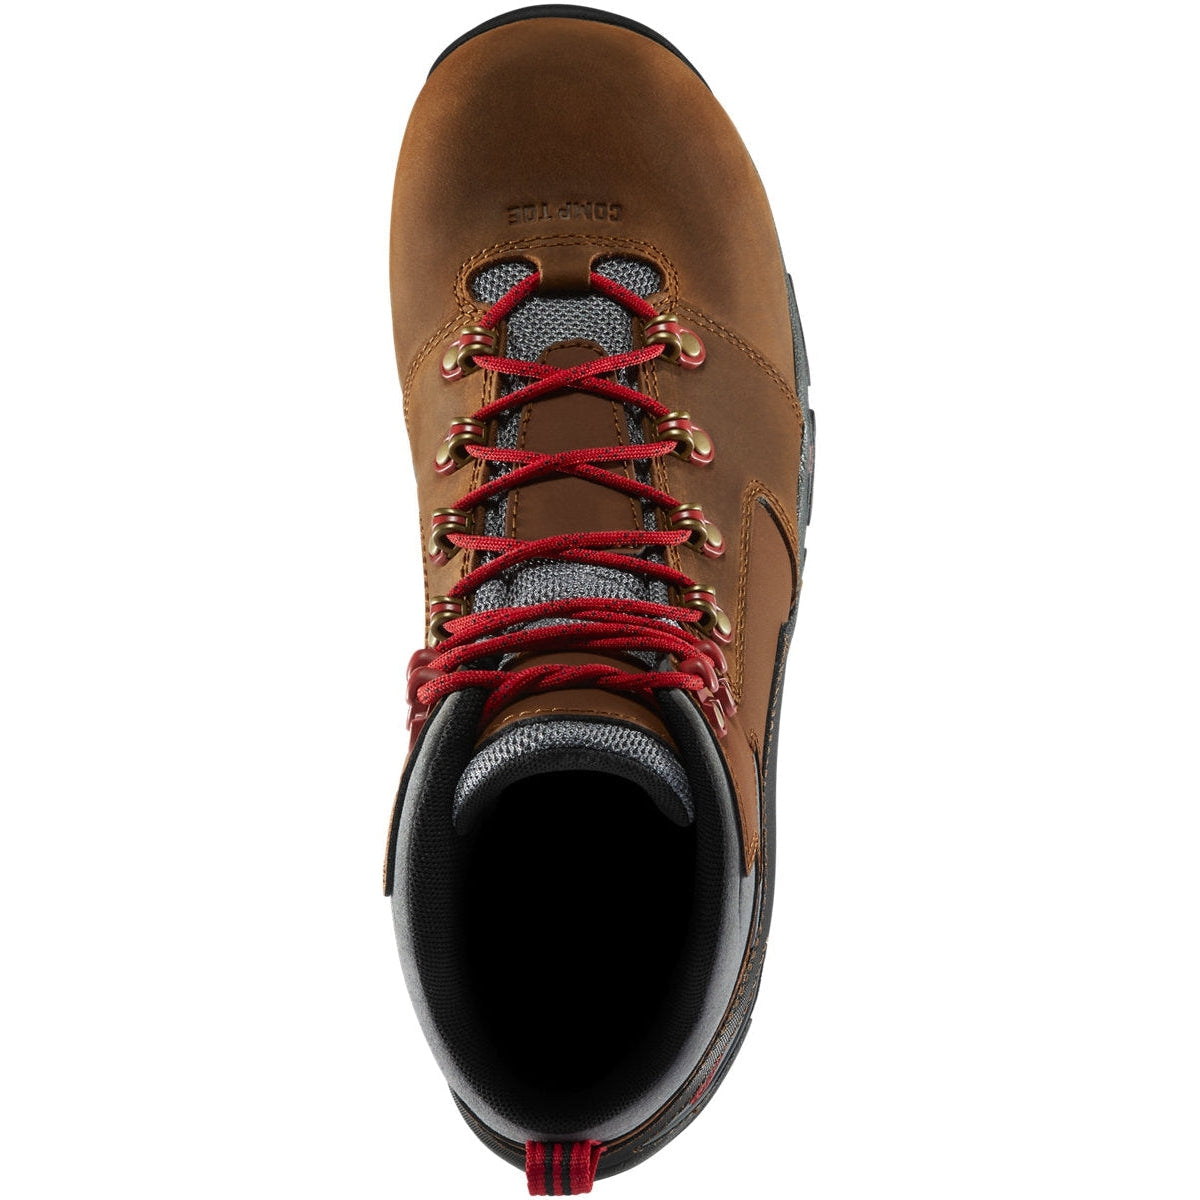 Danner Men's Vicious 4.5" Comp Toe WP Slip Resist Work Boot -Brown- 13882  - Overlook Boots